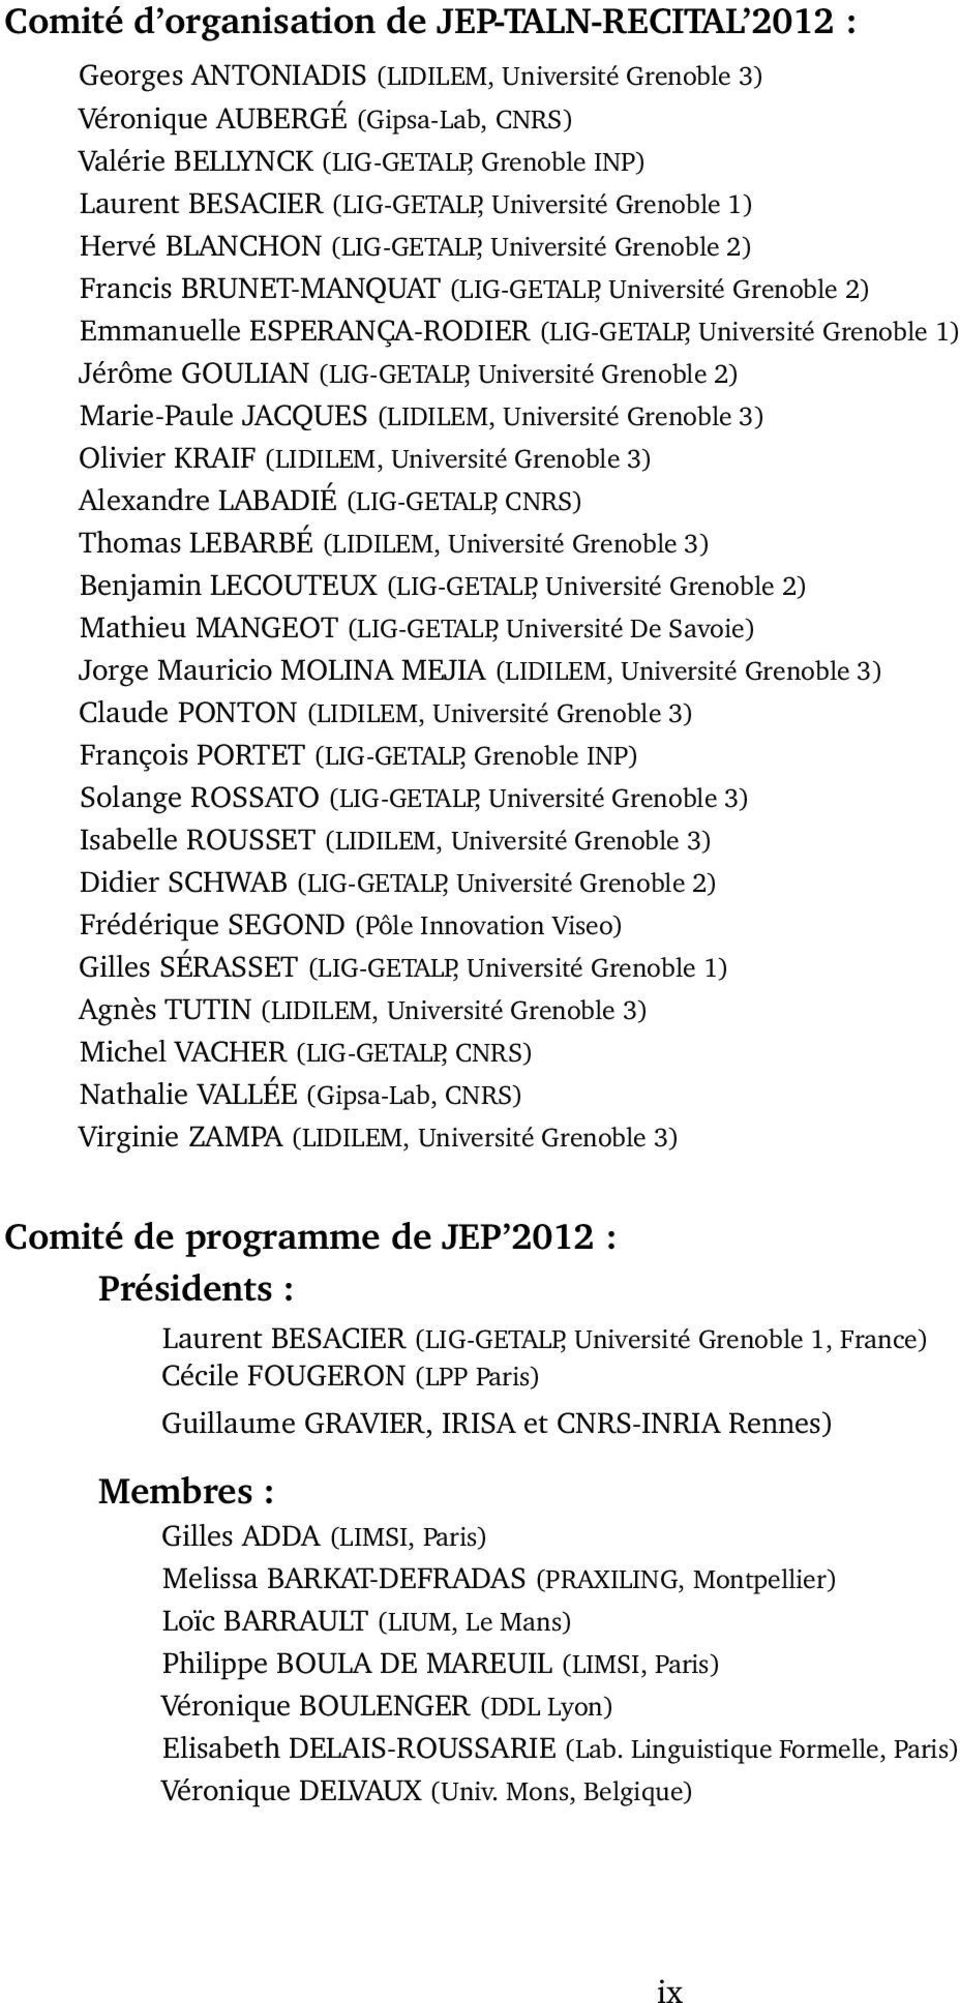 Grenoble 1) Jérôme GOULIAN (LIG-GETALP, Université Grenoble 2) Marie-Paule JACQUES (LIDILEM, Université Grenoble 3) Olivier KRAIF (LIDILEM, Université Grenoble 3) Alexandre LABADIÉ (LIG-GETALP, CNRS)